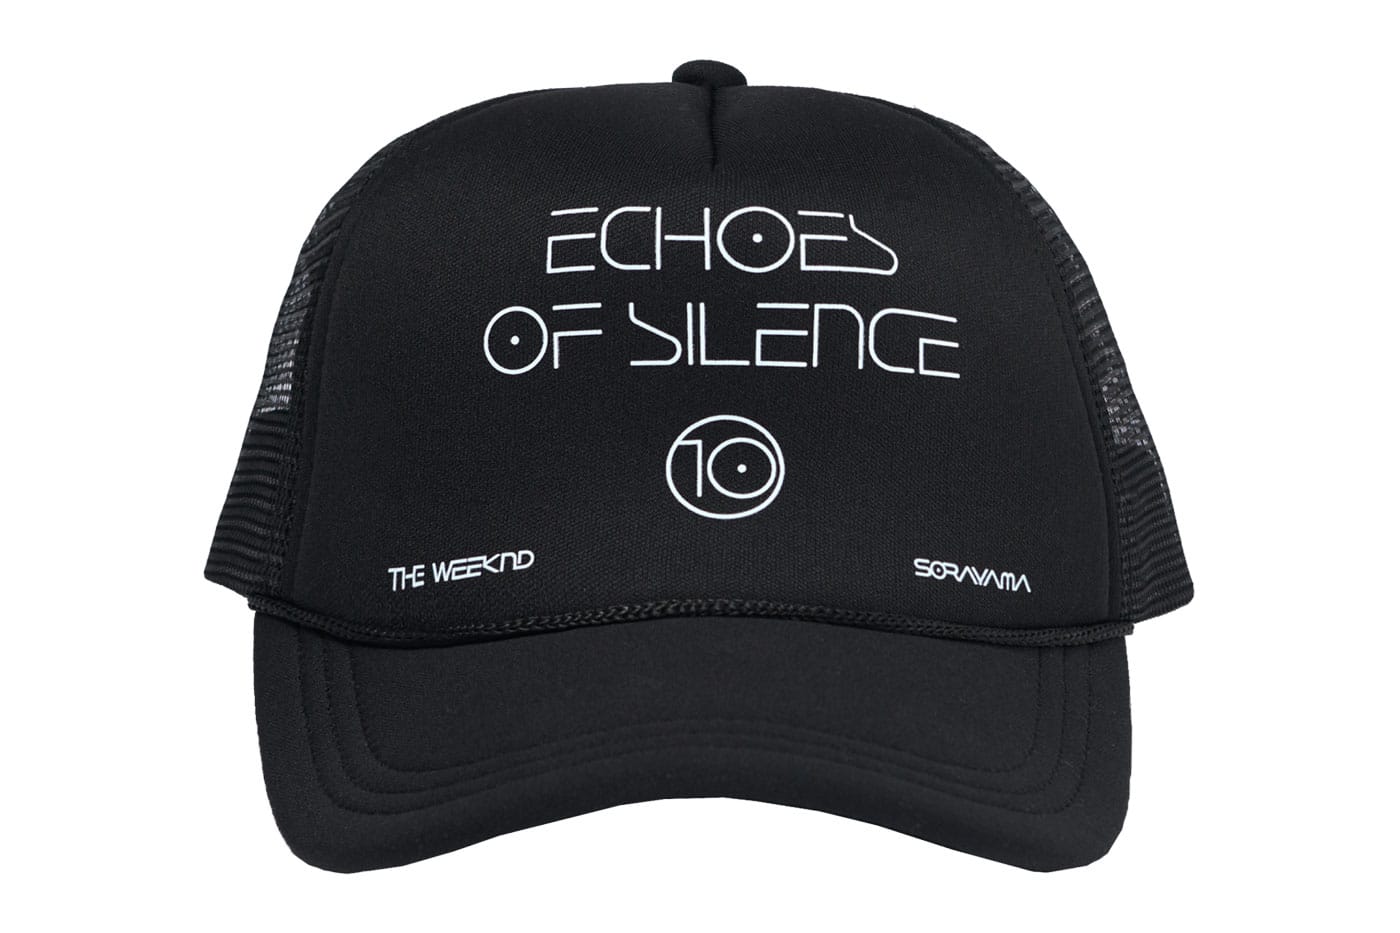 空山基x The Weeknd《Echoes of Silence》10 週年紀念聯乘系列正式發售